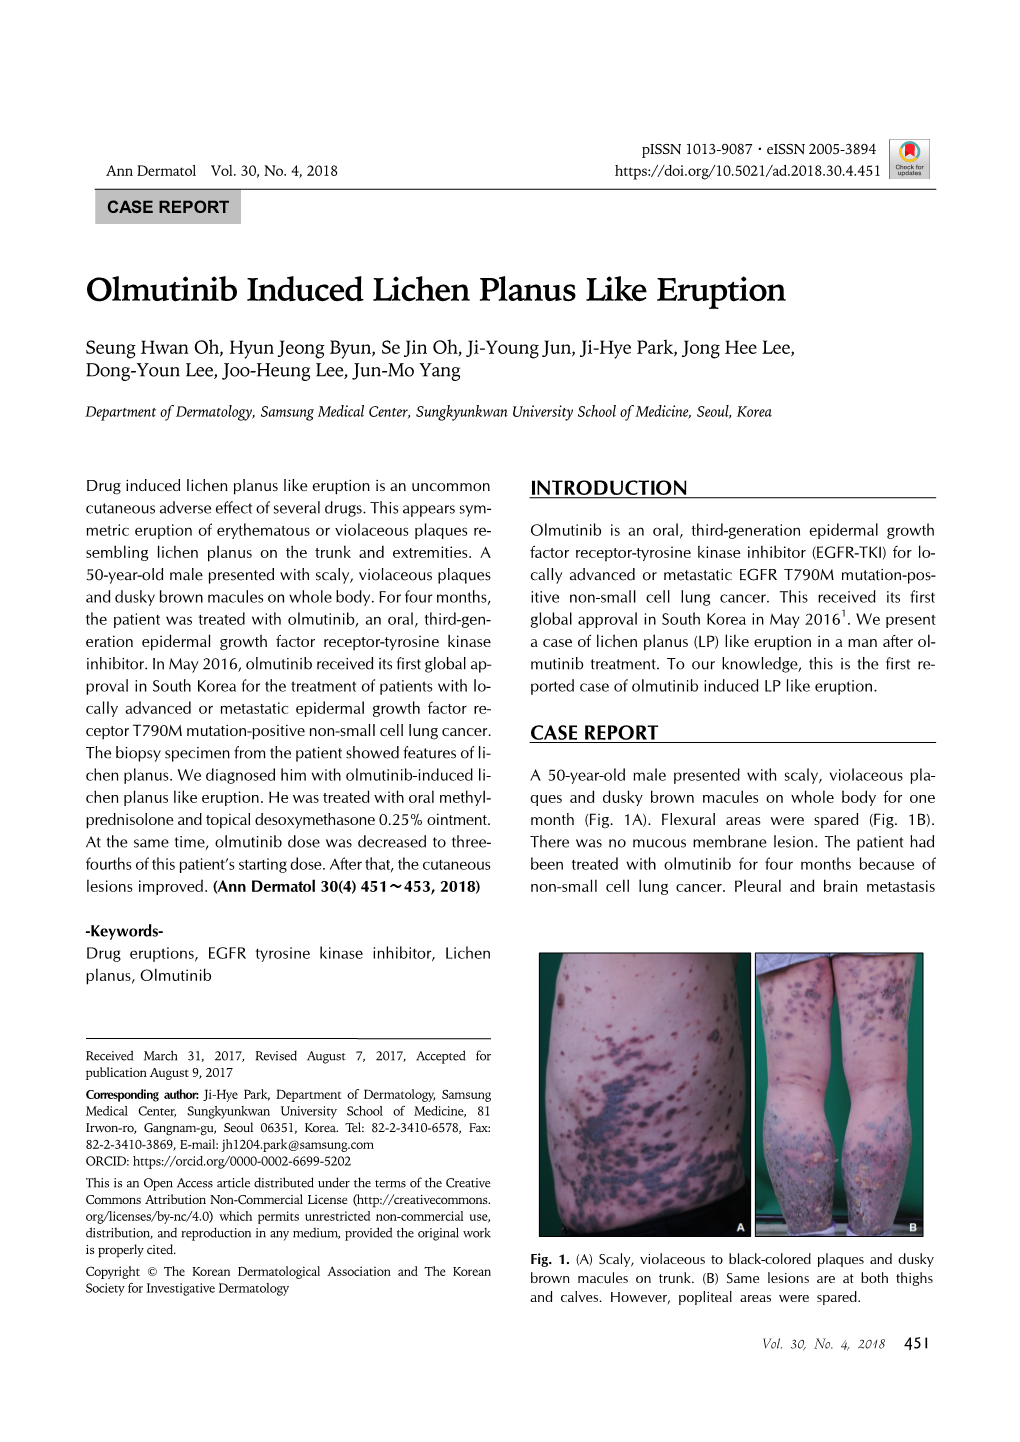 Olmutinib Induced Lichen Planus Like Eruption Pissn 1013-9087ㆍeissn 2005-3894 Ann Dermatol Vol